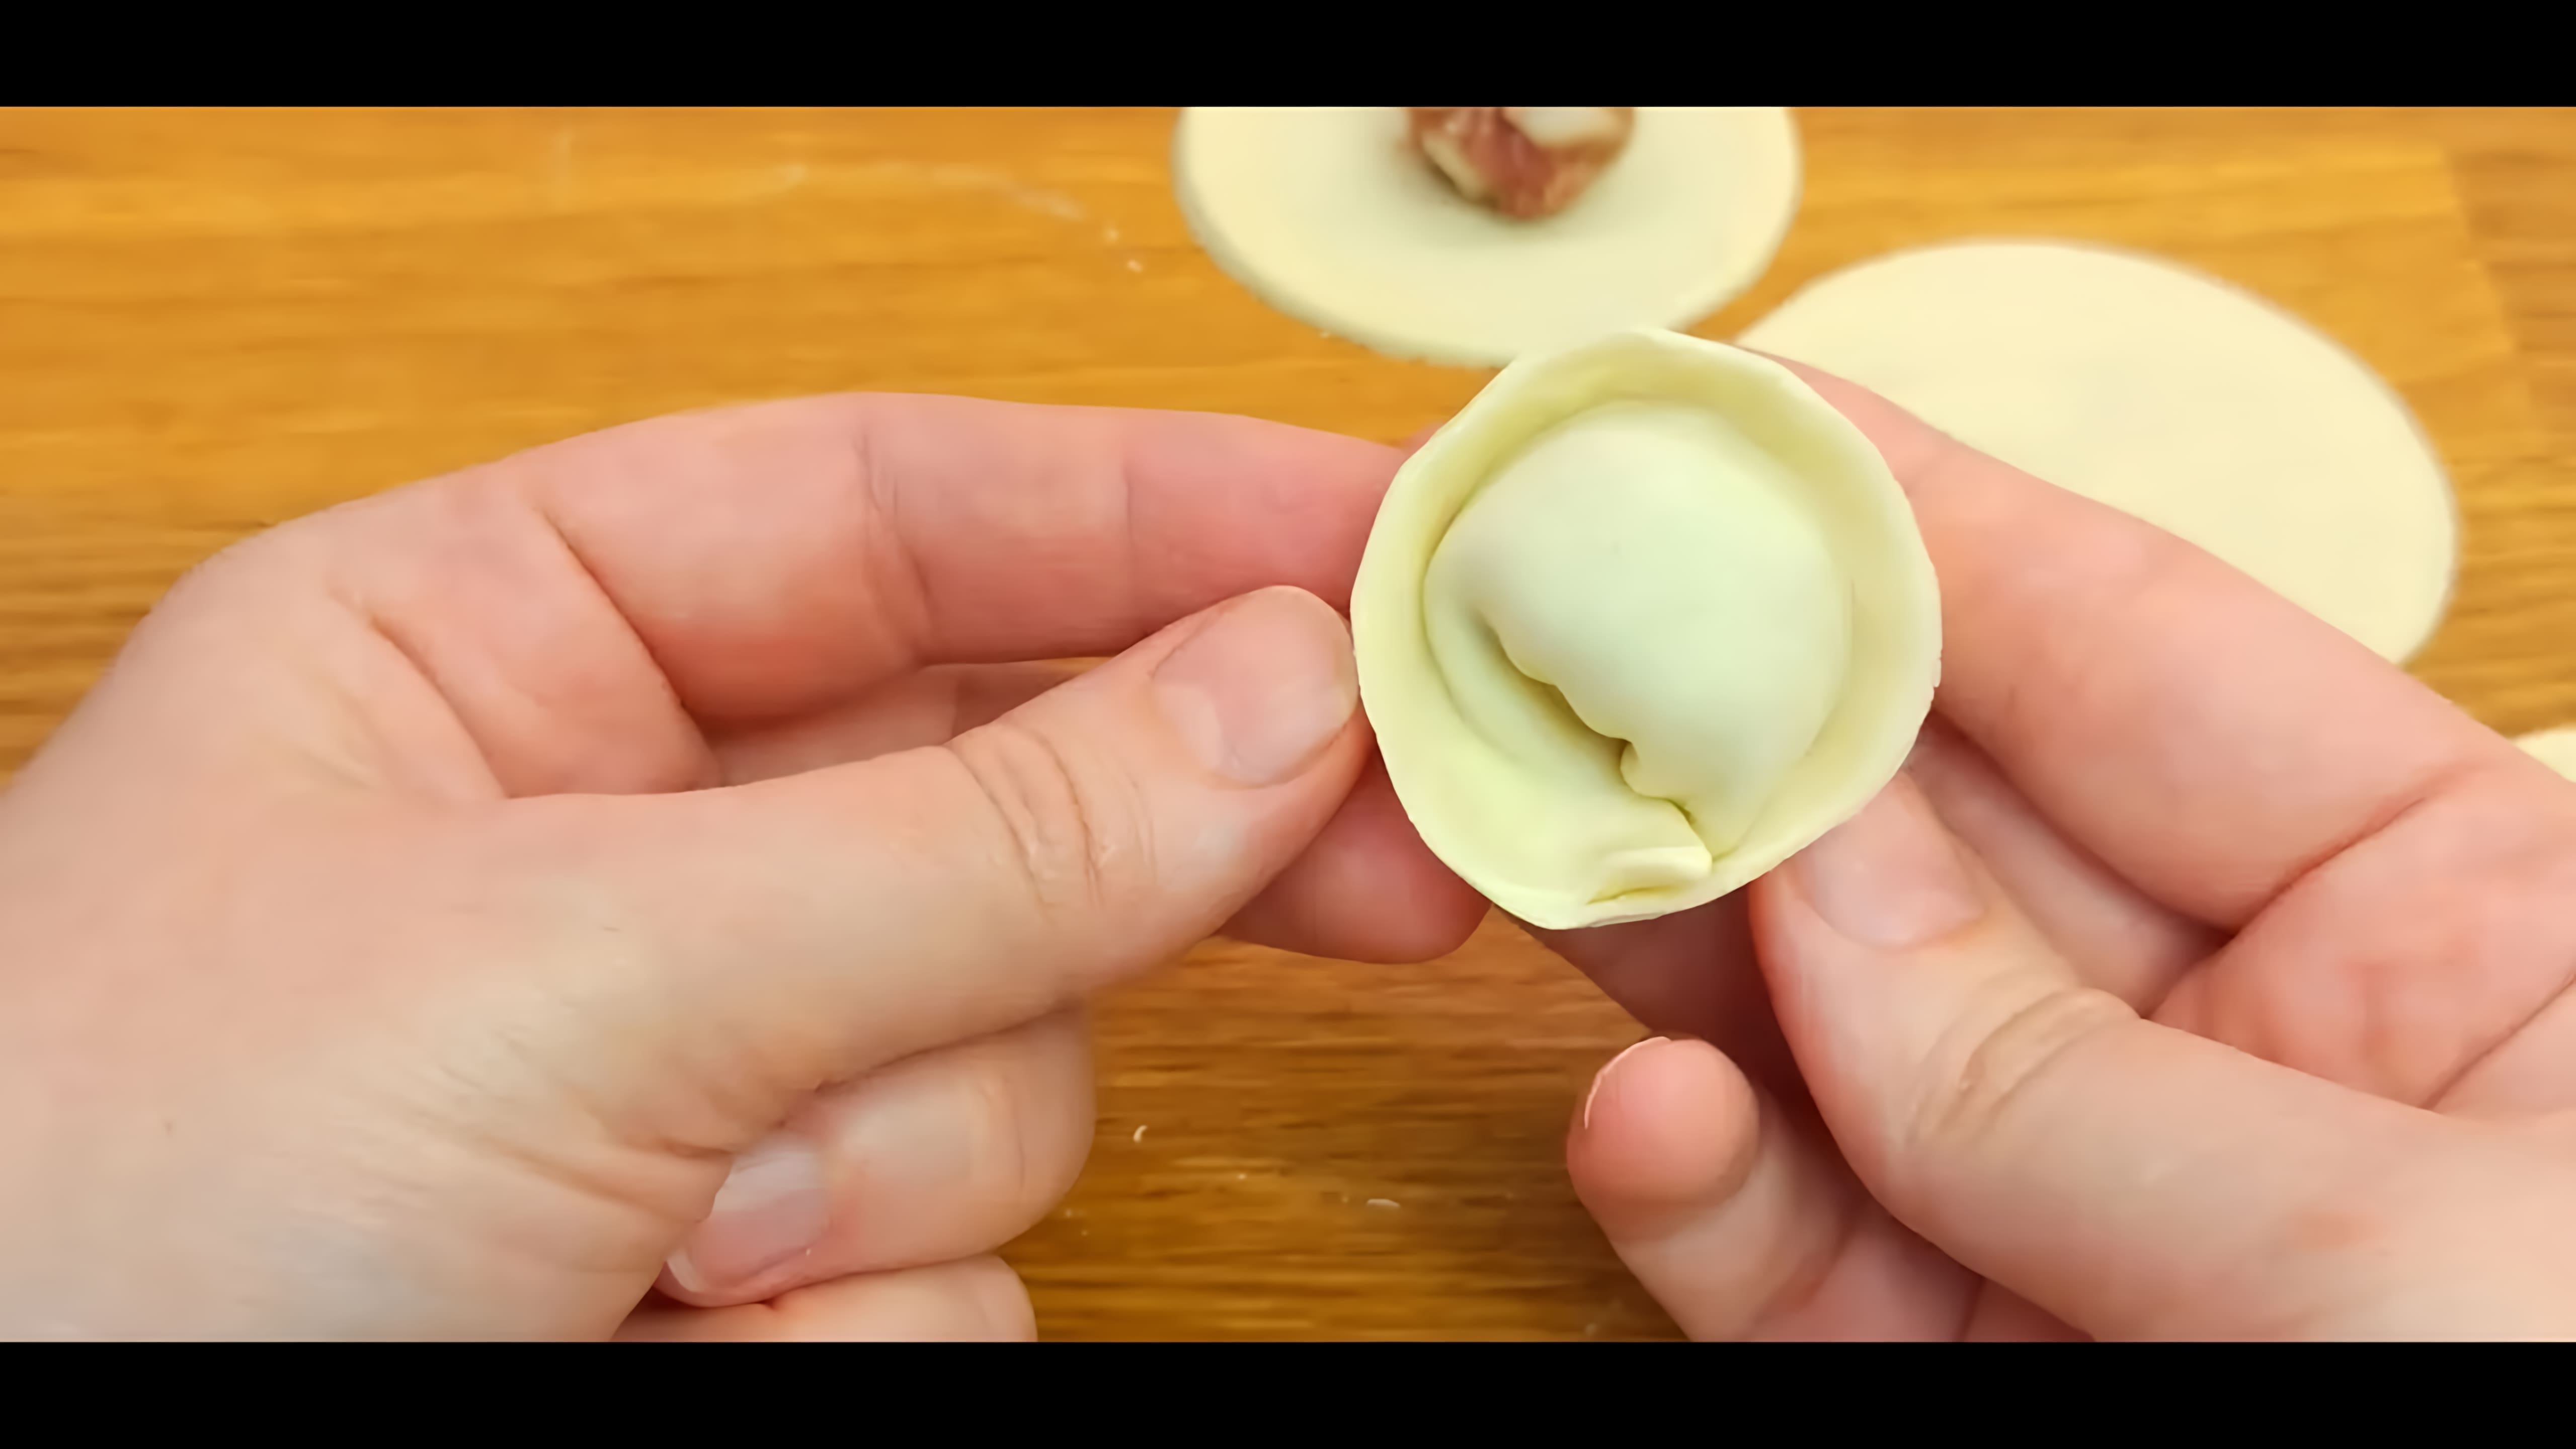 В этом видео-ролике будет рассказано о том, как приготовить идеальное тесто для пельменей, которое не рвется, не липнет и не разваривается